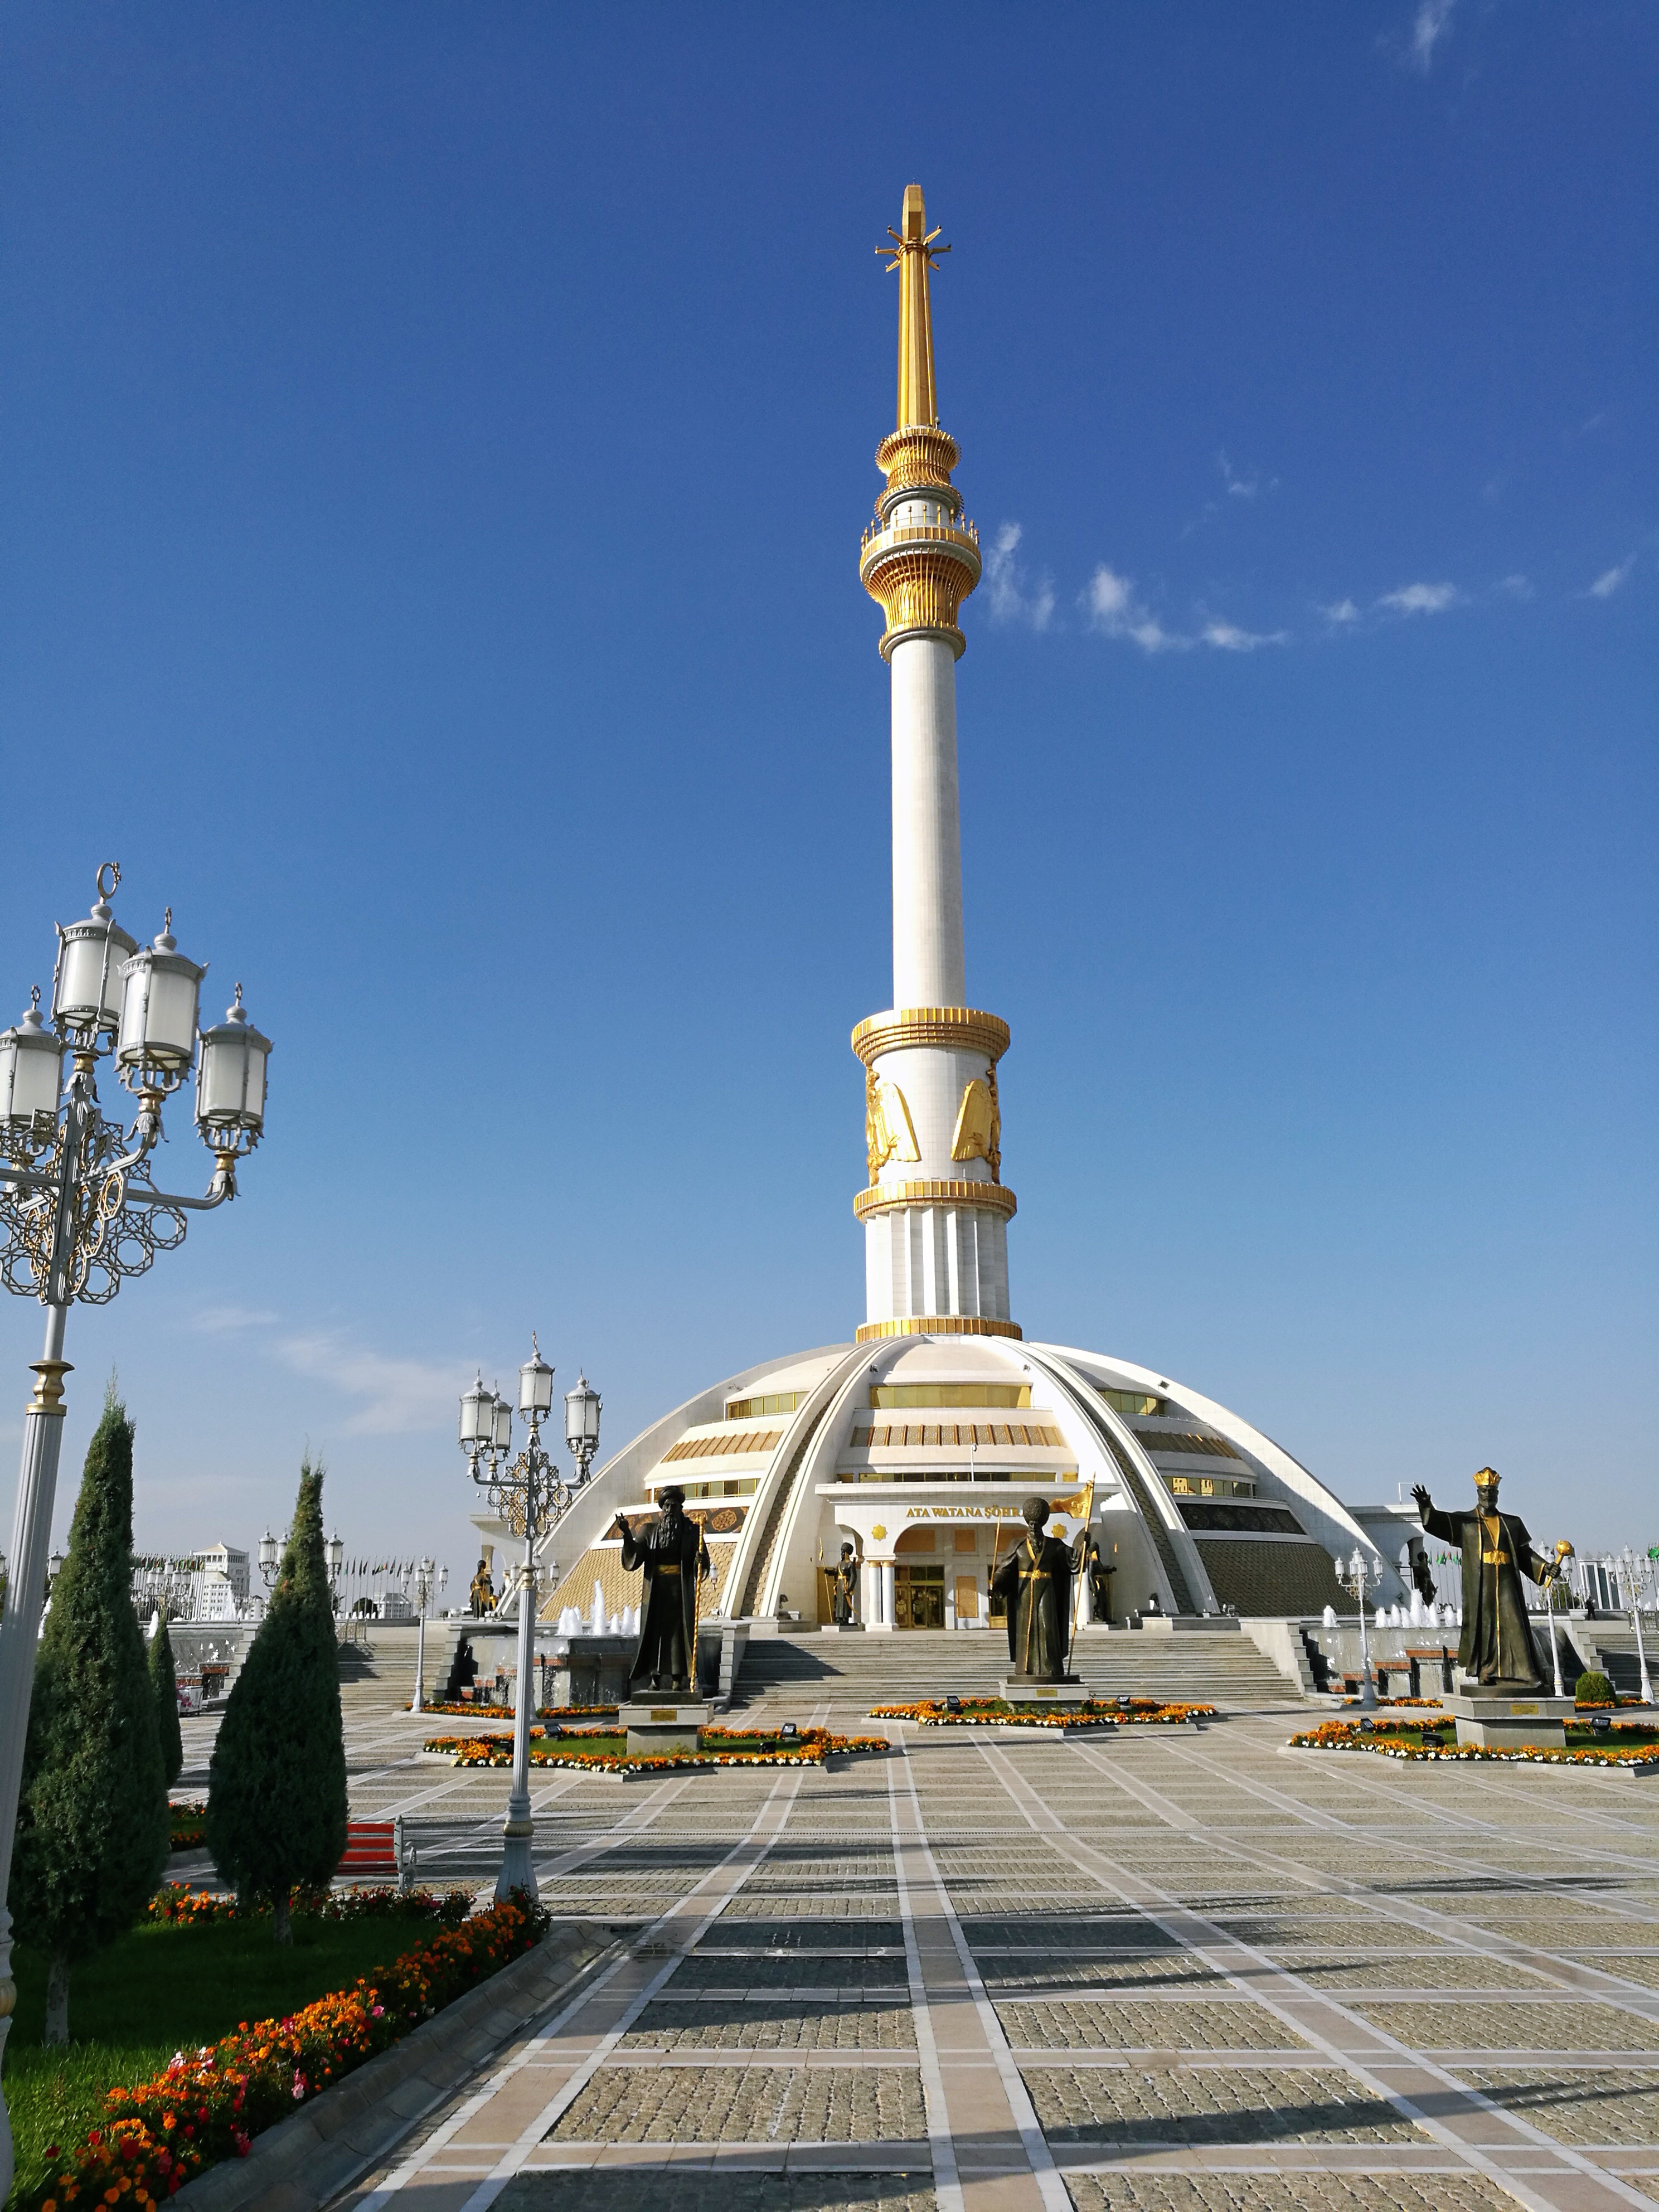 土库曼斯坦 土耳其图片